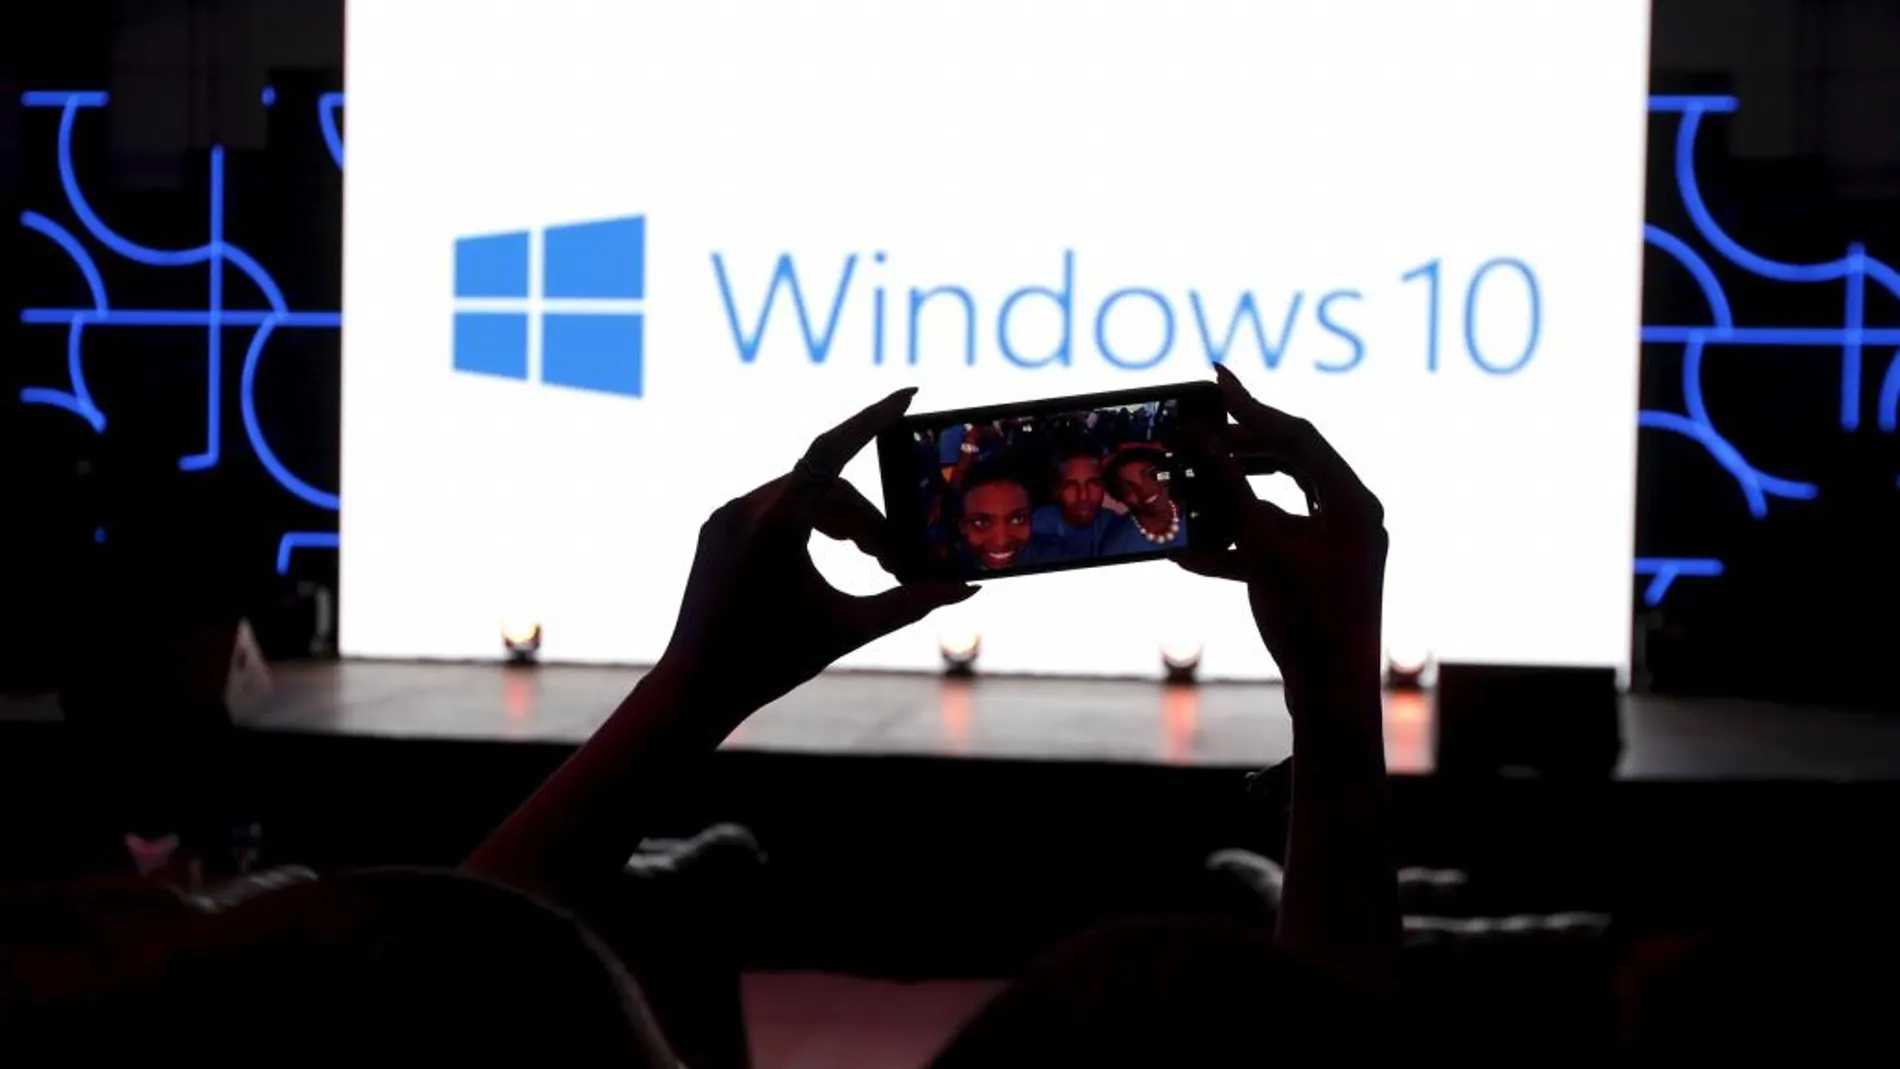 La presentación de Windows 10 ha generado una considerable expectación